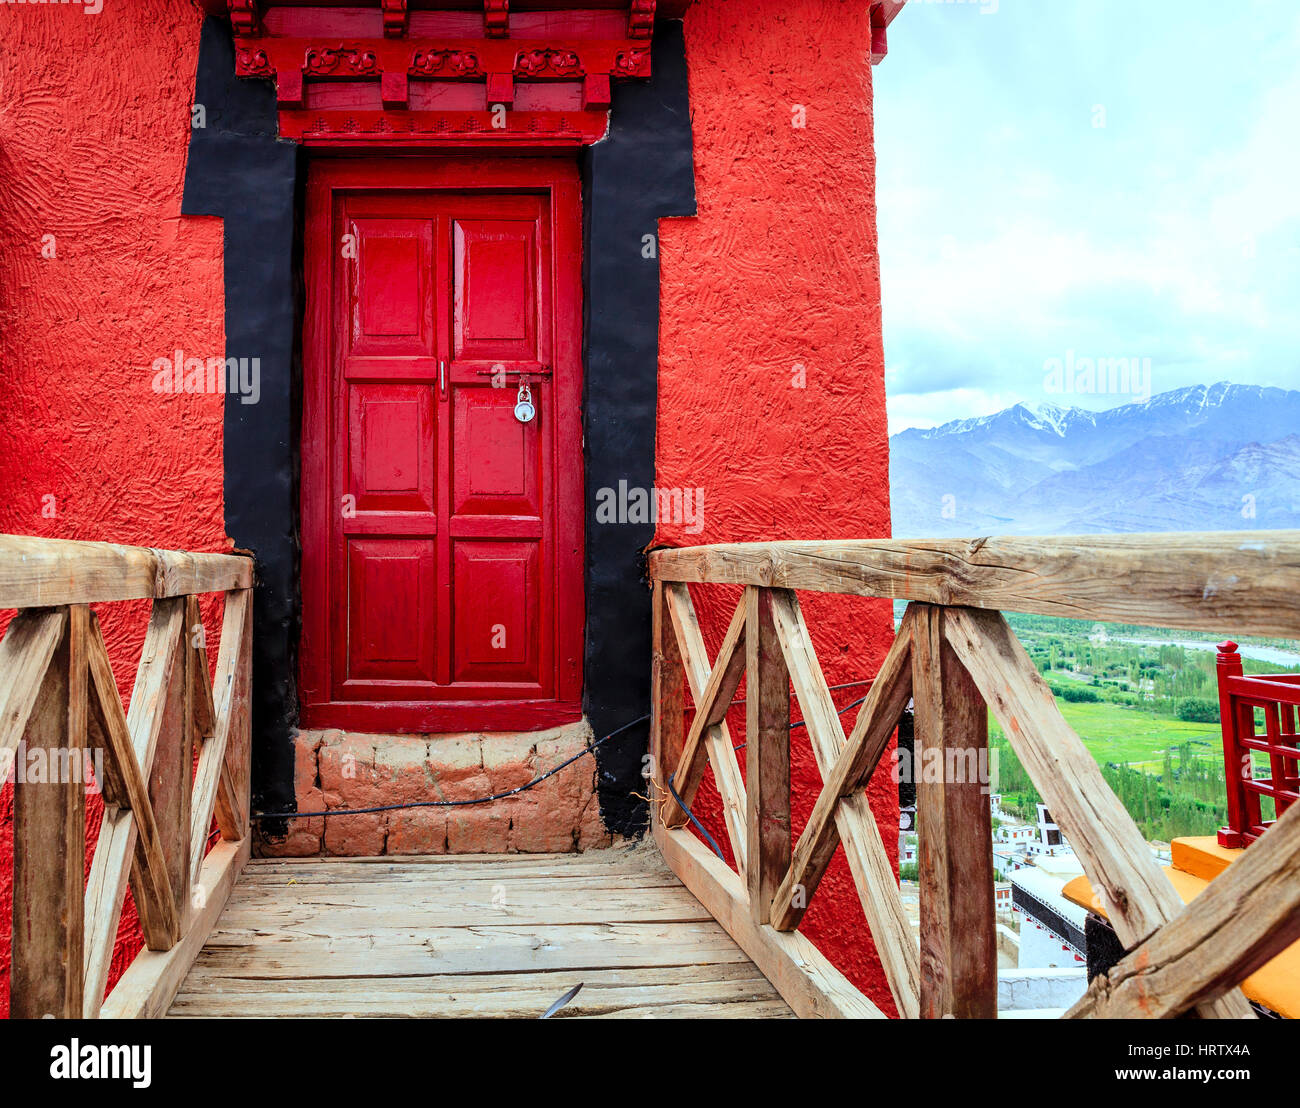 Brücke und eine Tür in einem buddhistischen Kloster in Ladakh, Kaschmir, Indien Stockfoto